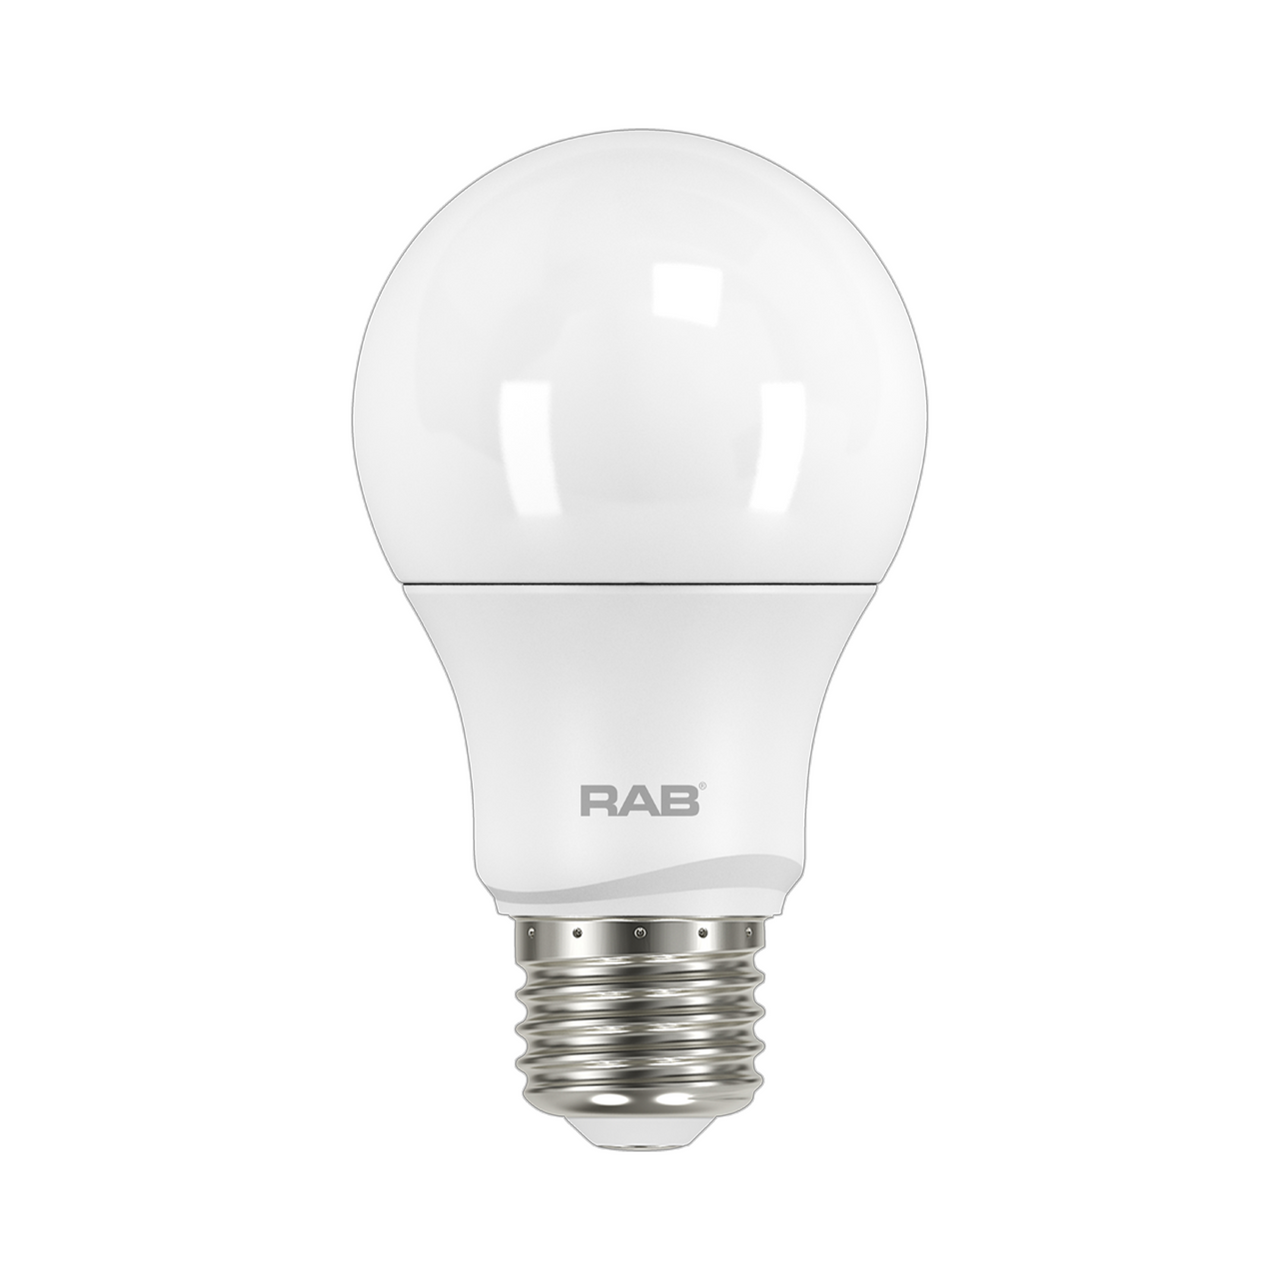 RAB A19-5-E26-840-DIM - LED A19 5W 4000K LED Light Bulb